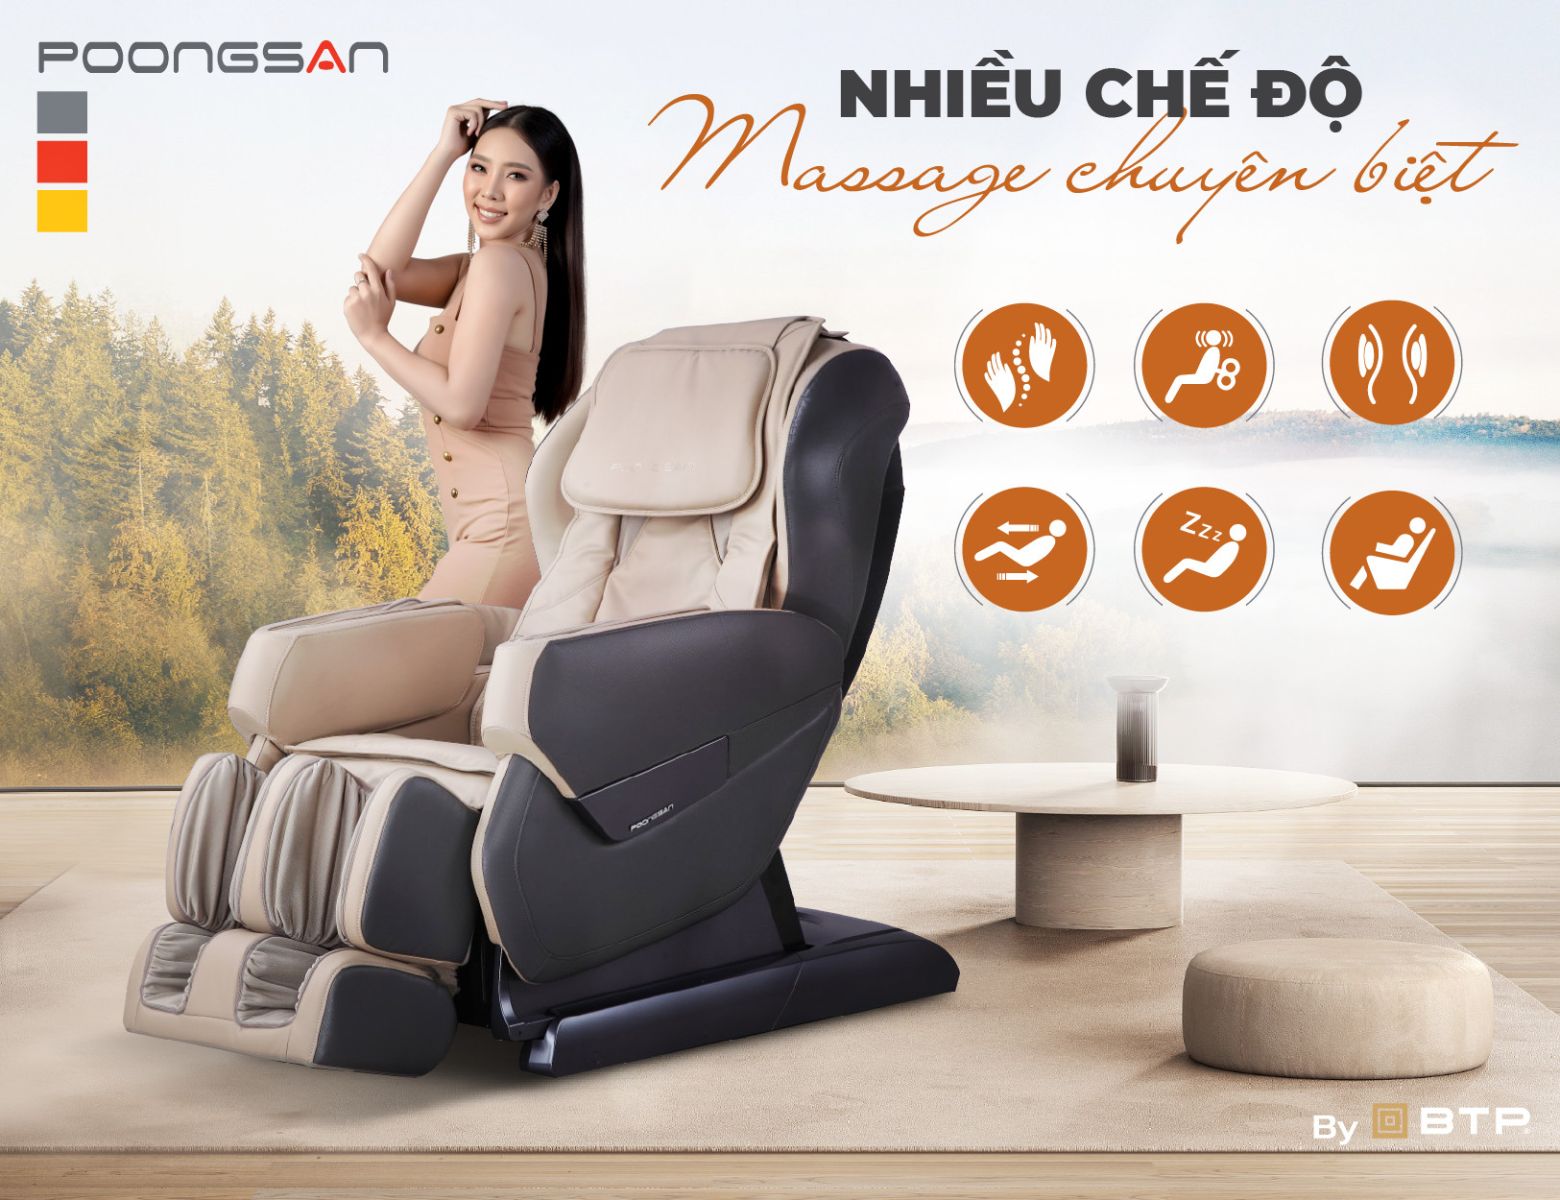 Mỗi loại ghế massage có hệ thống massage riêng biệt phục vụ mục đích thư giãn của mỗi người